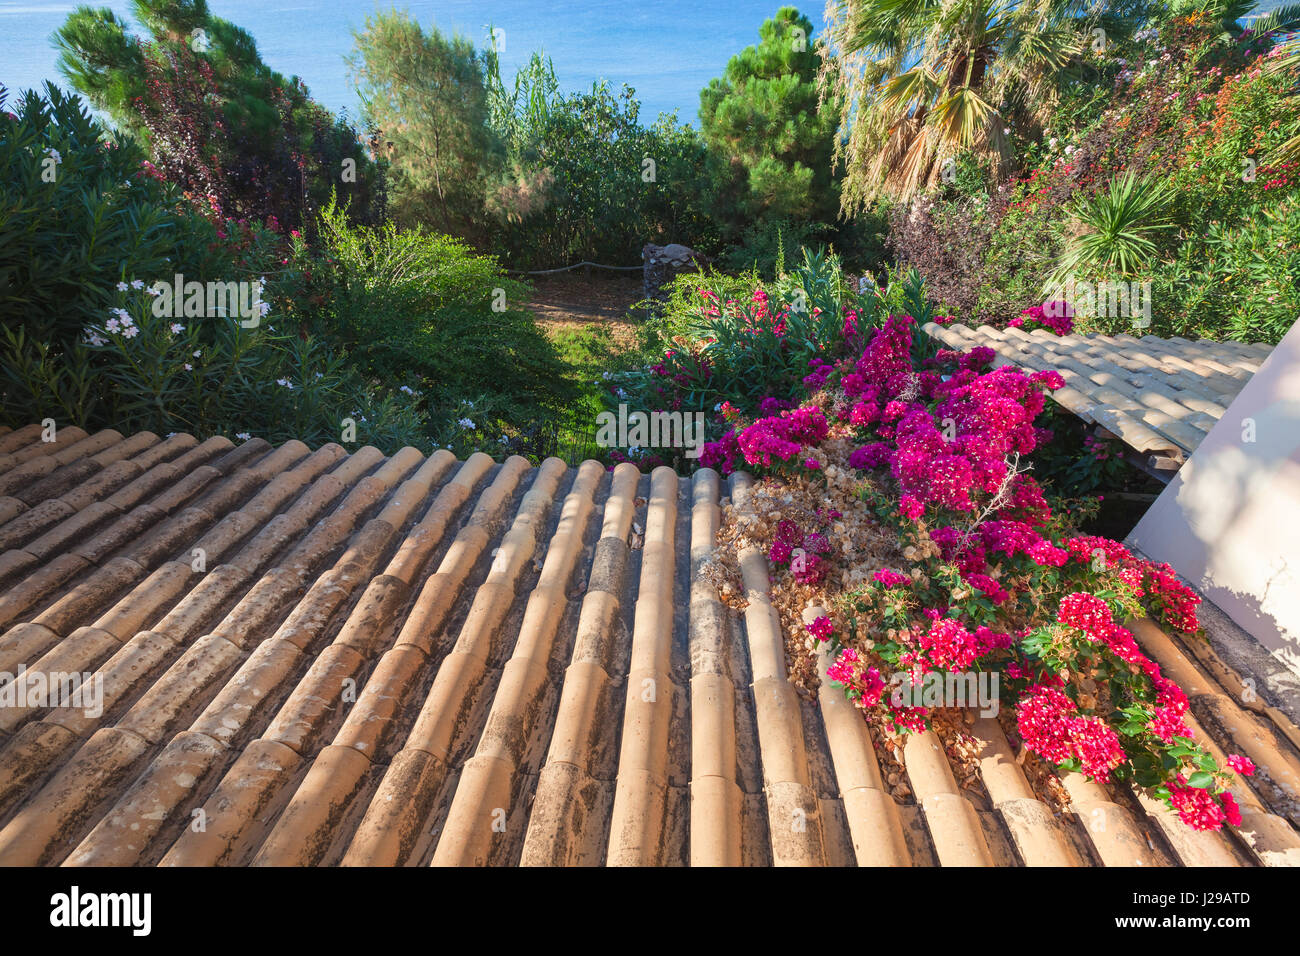 Ancien carrelage en argile pente de toit descend dans un jardin d'été, photo de fond avec effet de perspective Banque D'Images